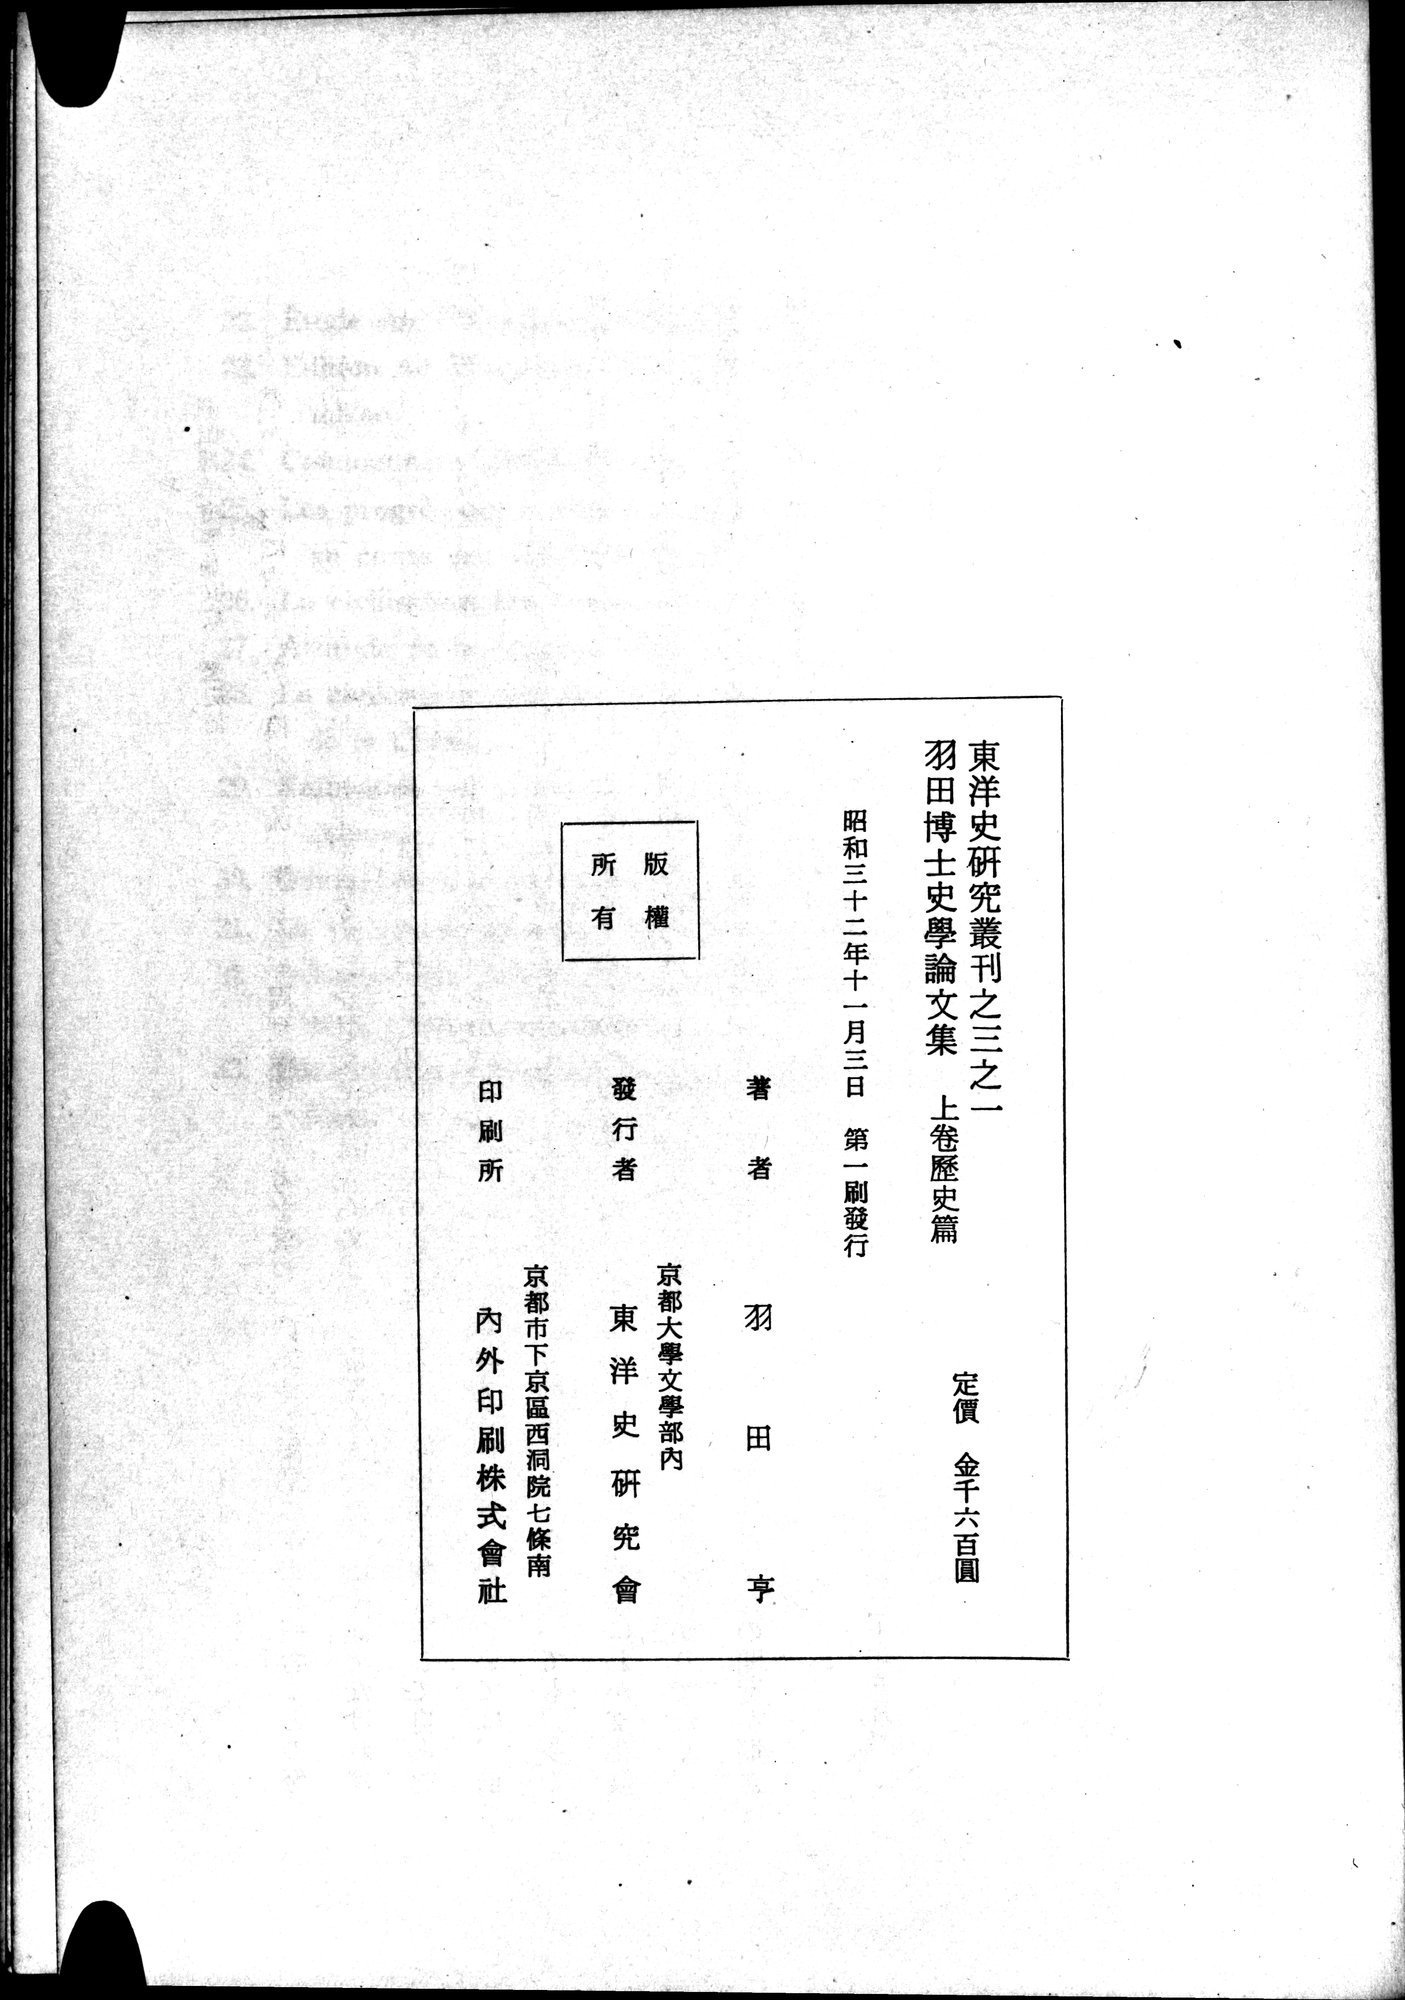 羽田博士史学論文集 : vol.1 / 823 ページ（白黒高解像度画像）